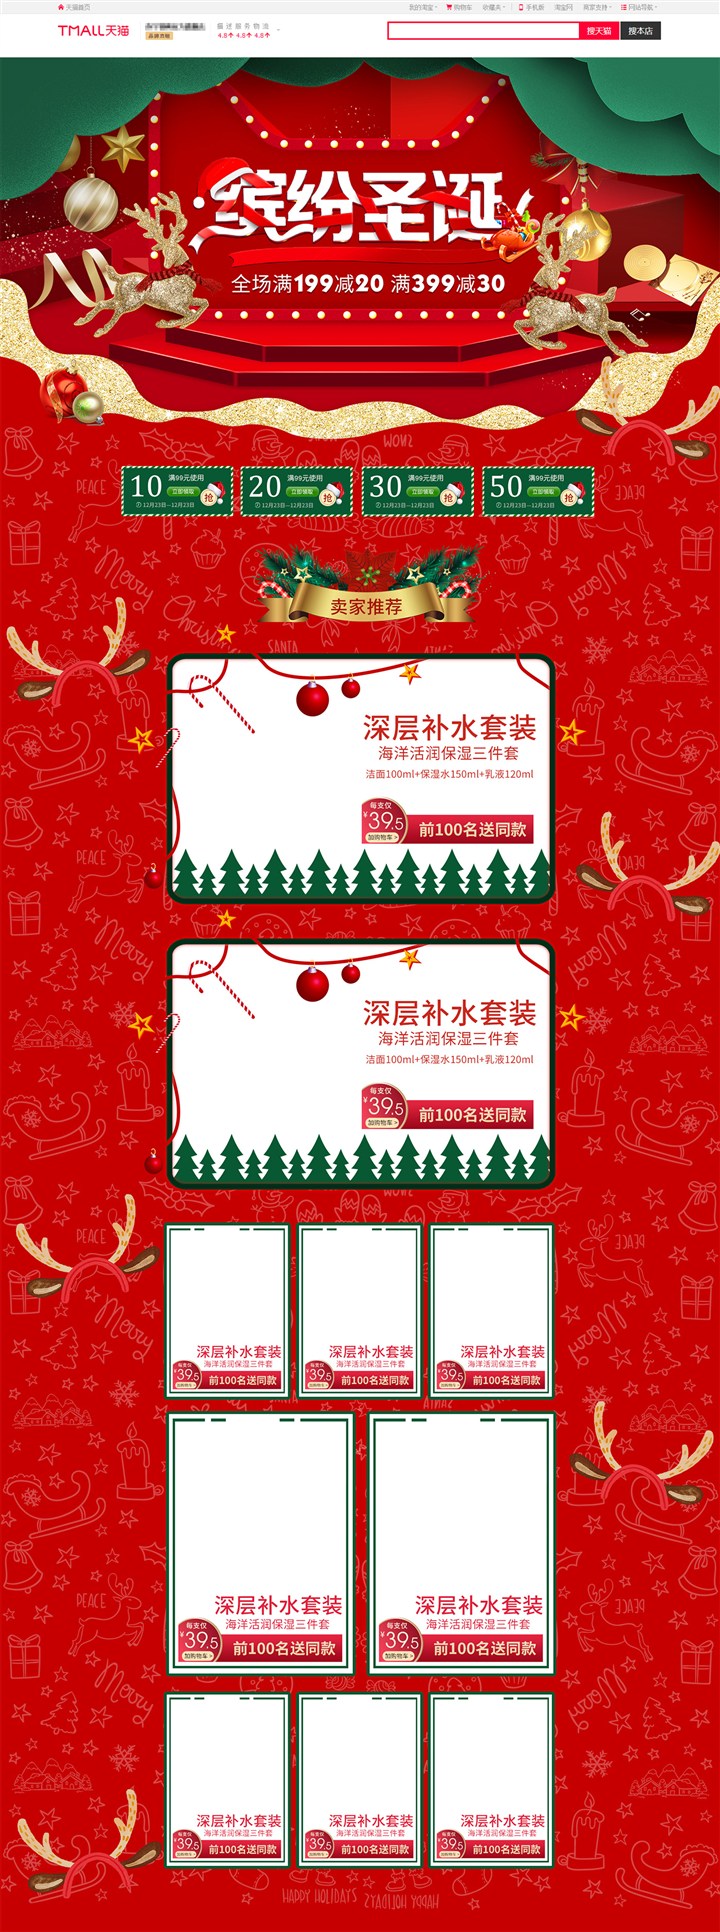 淘宝天猫圣诞节红色化妆品护肤品首页模板